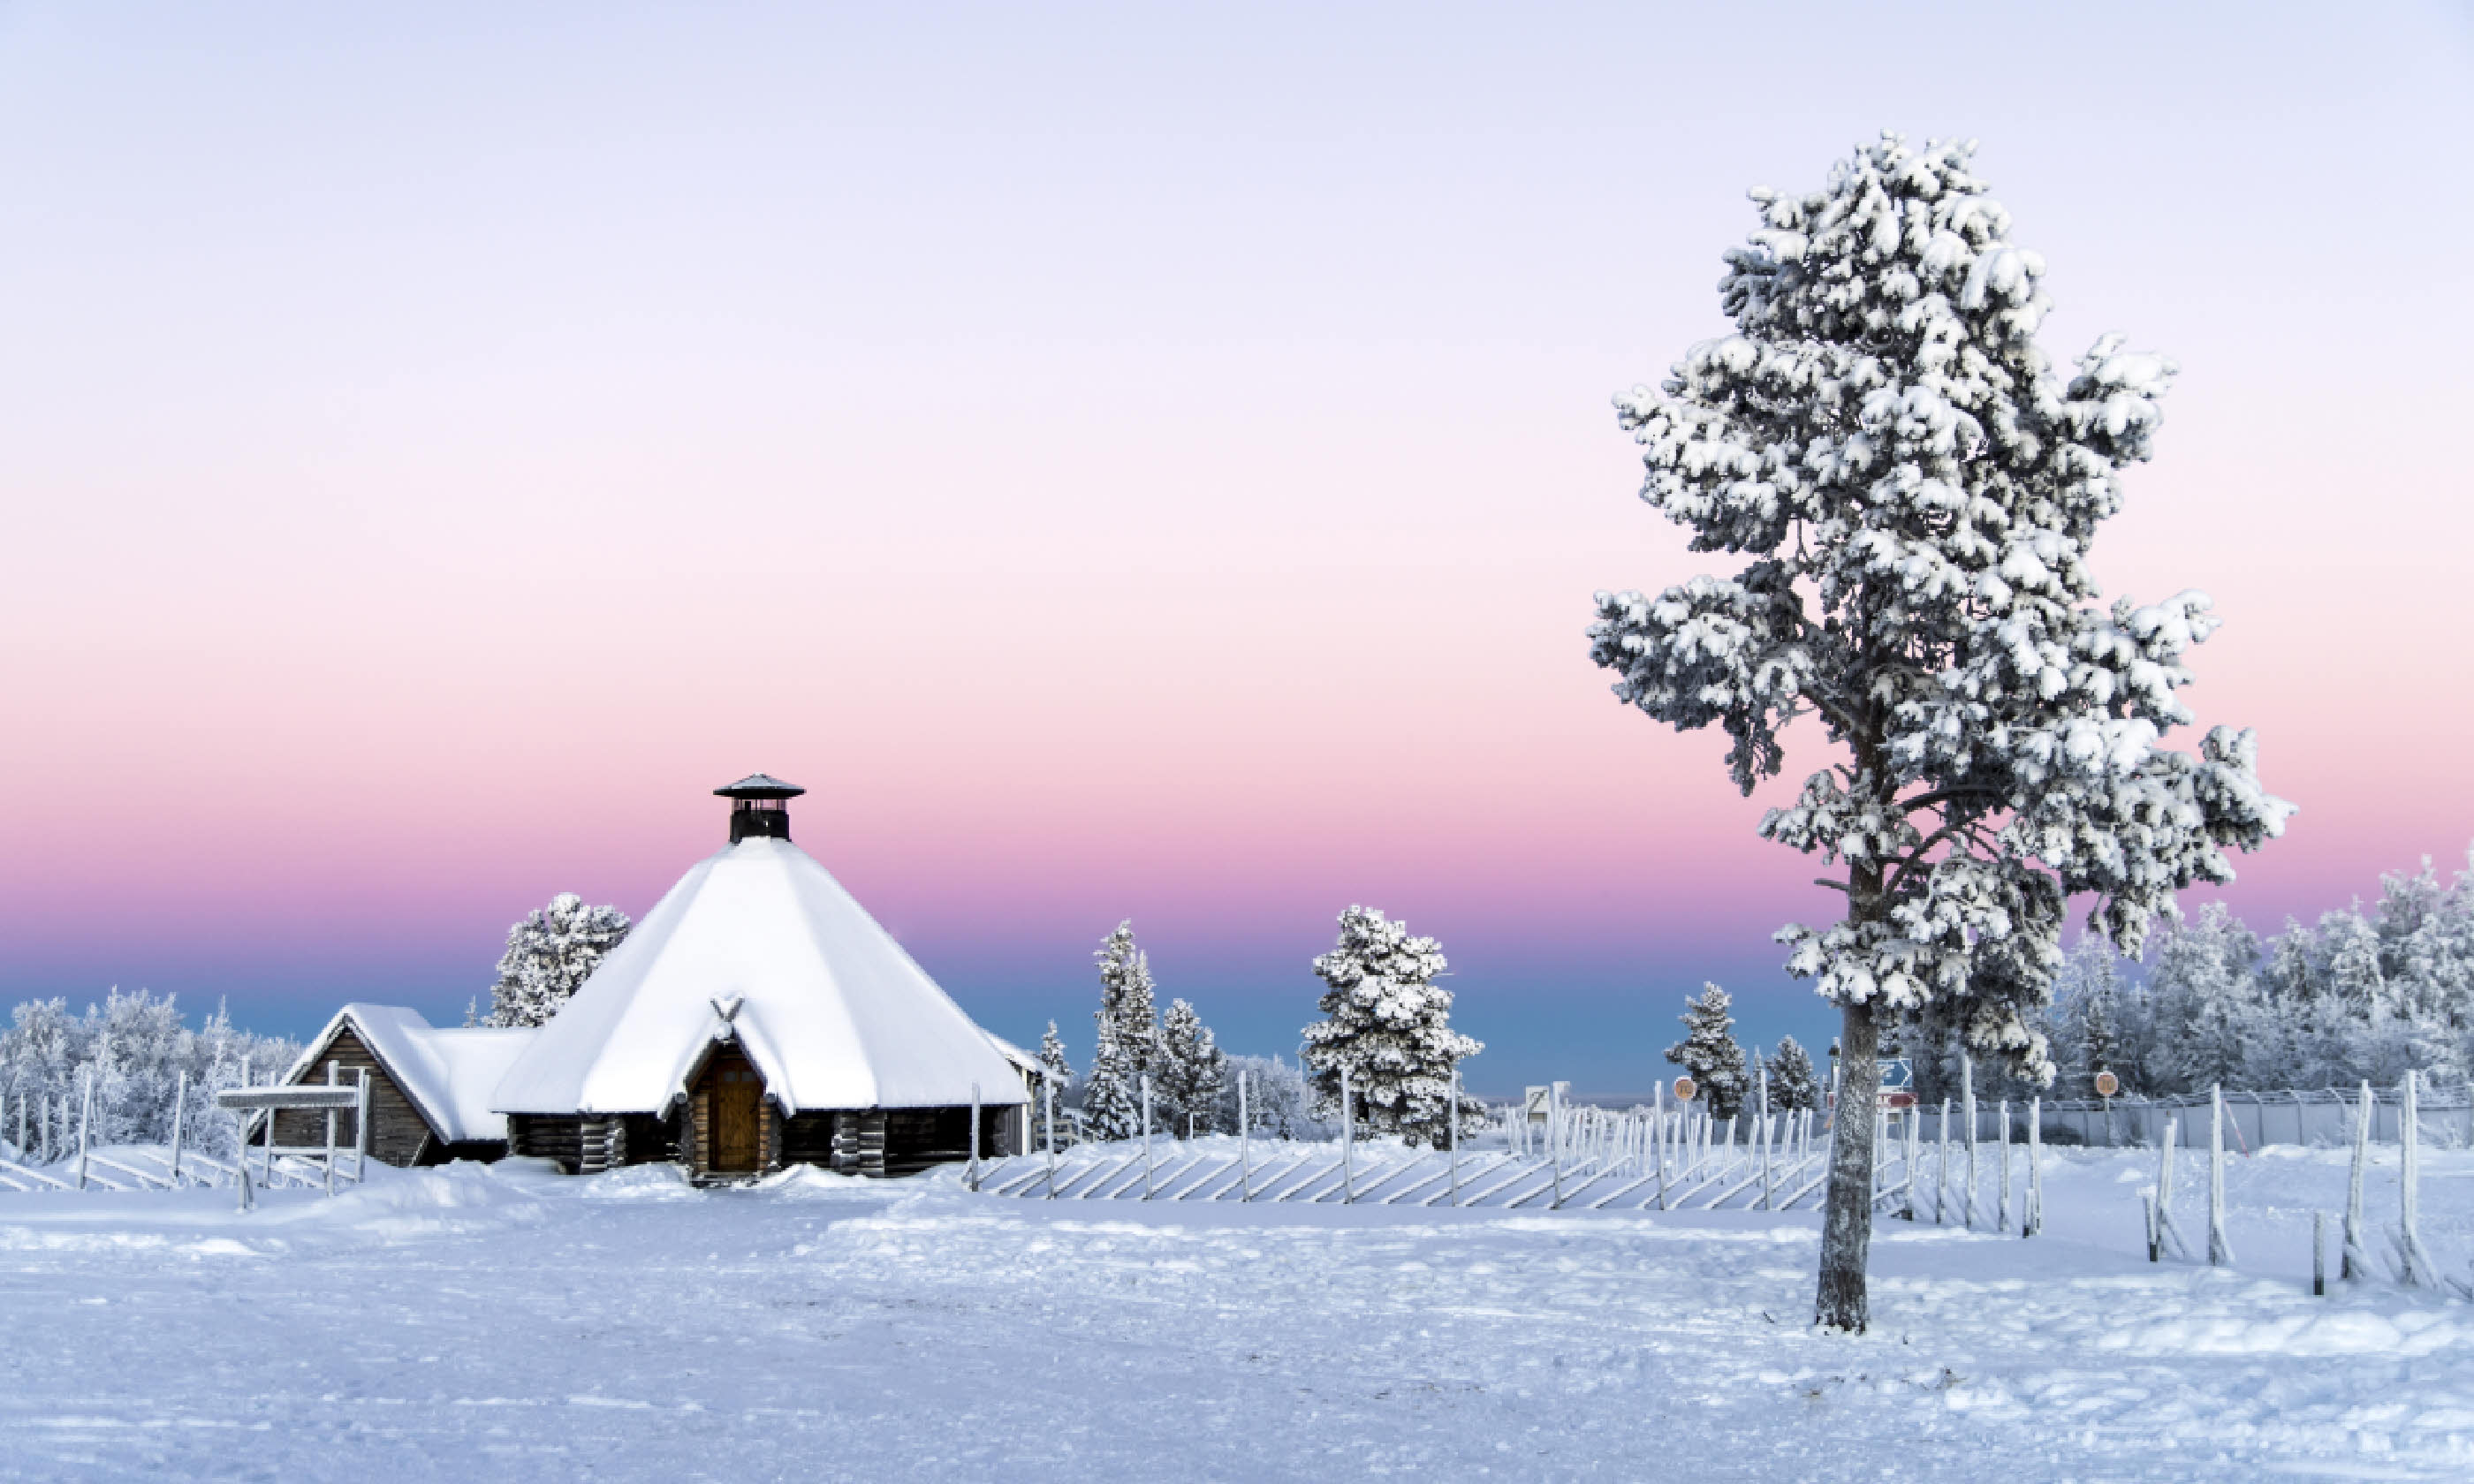 Sunset at Kiruna near Abisko (Shutterstock)